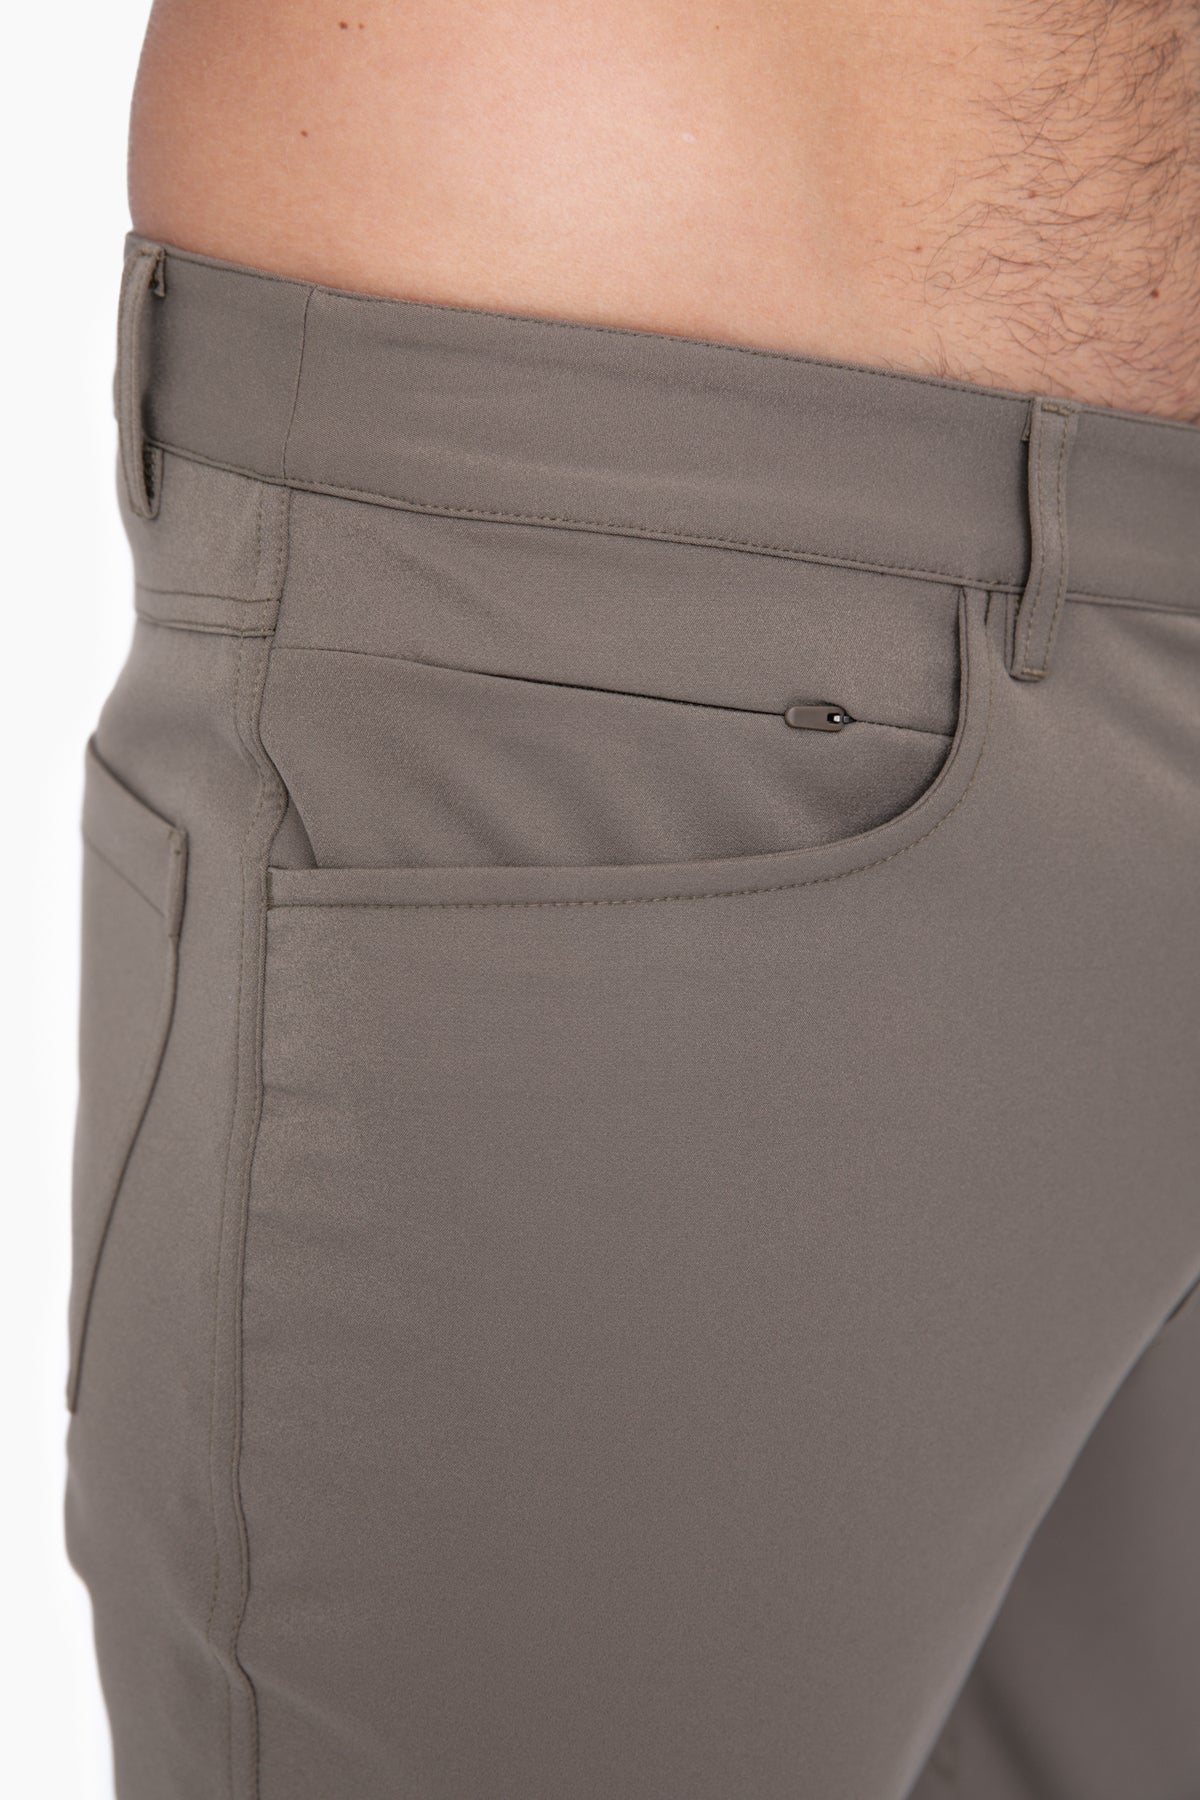 MEN'S - 5 Pocket Golf Pants - Olive